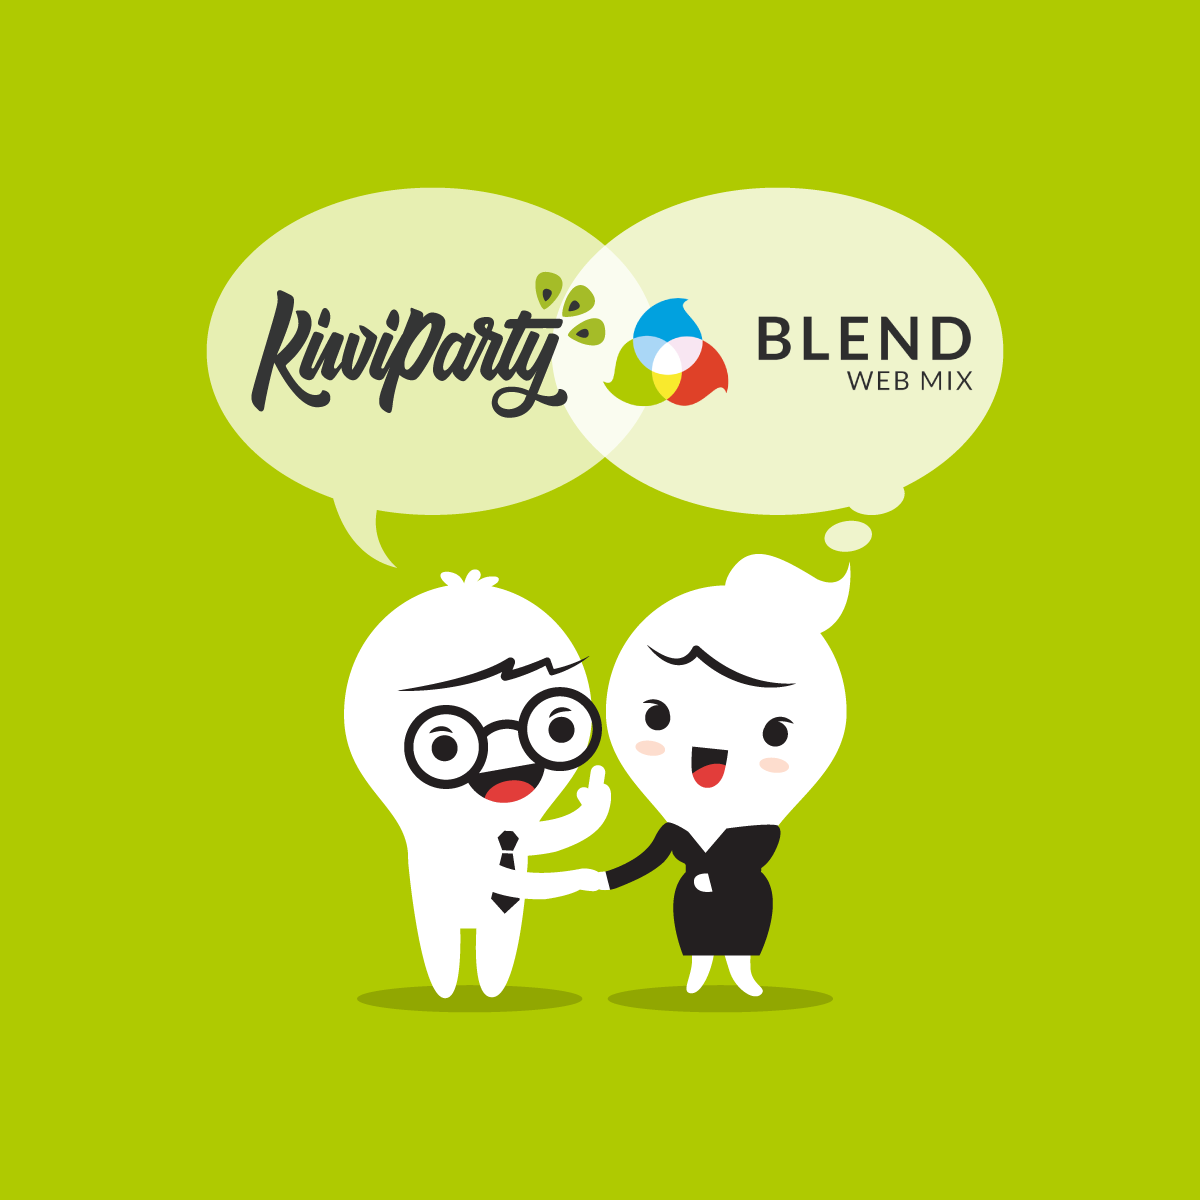 KiwiParty et BlendWebMix